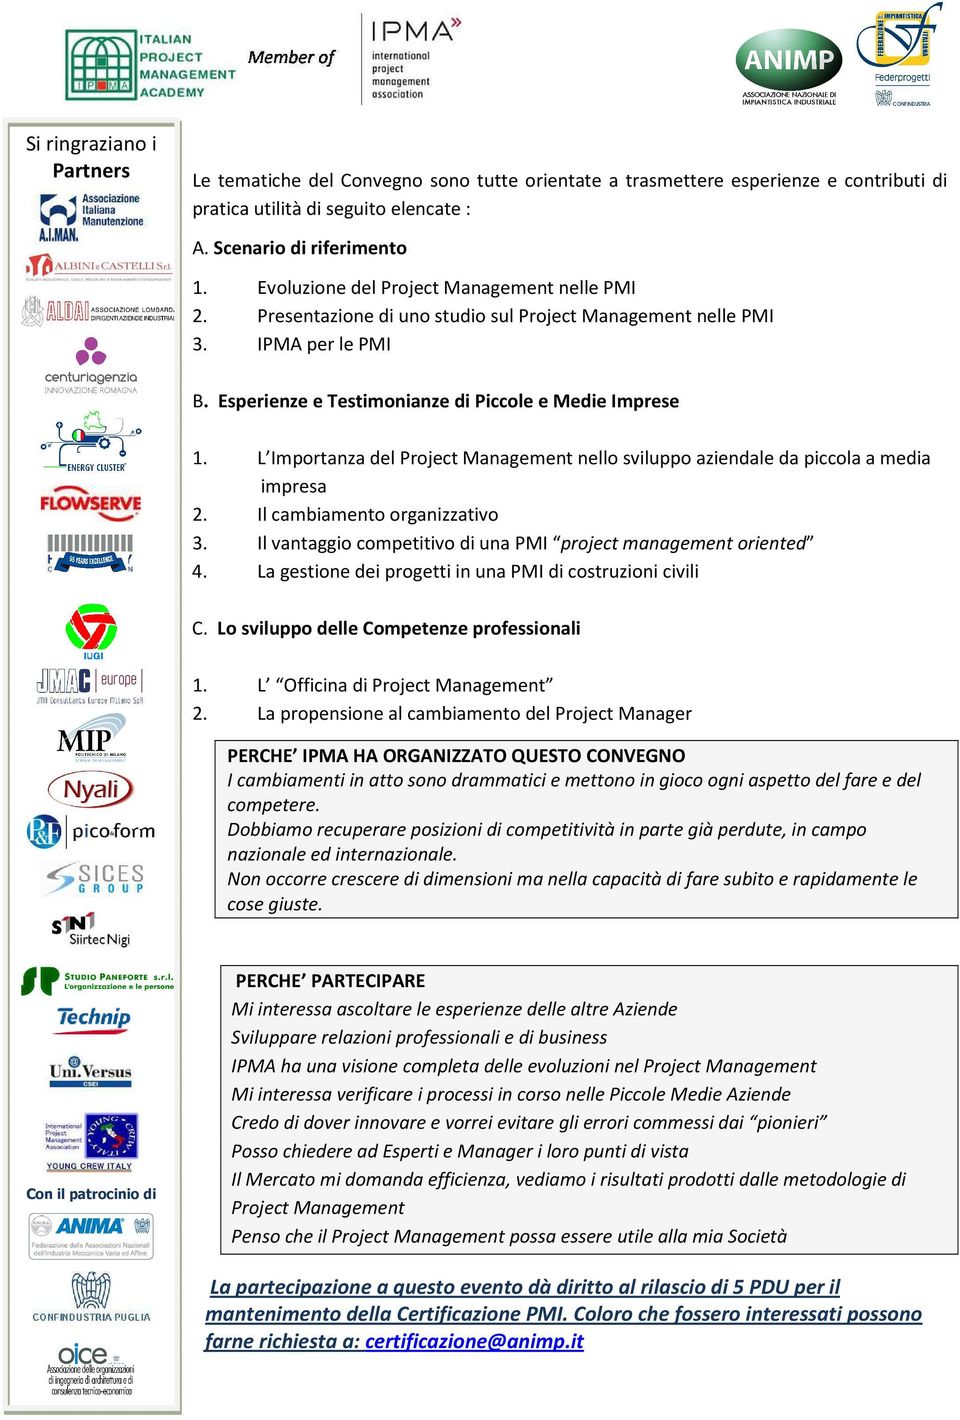 L Importanza del Project Management nello sviluppo aziendale da piccola a media impresa 2. Il cambiamento organizzativo 3. Il vantaggio competitivo di una PMI project management oriented 4.